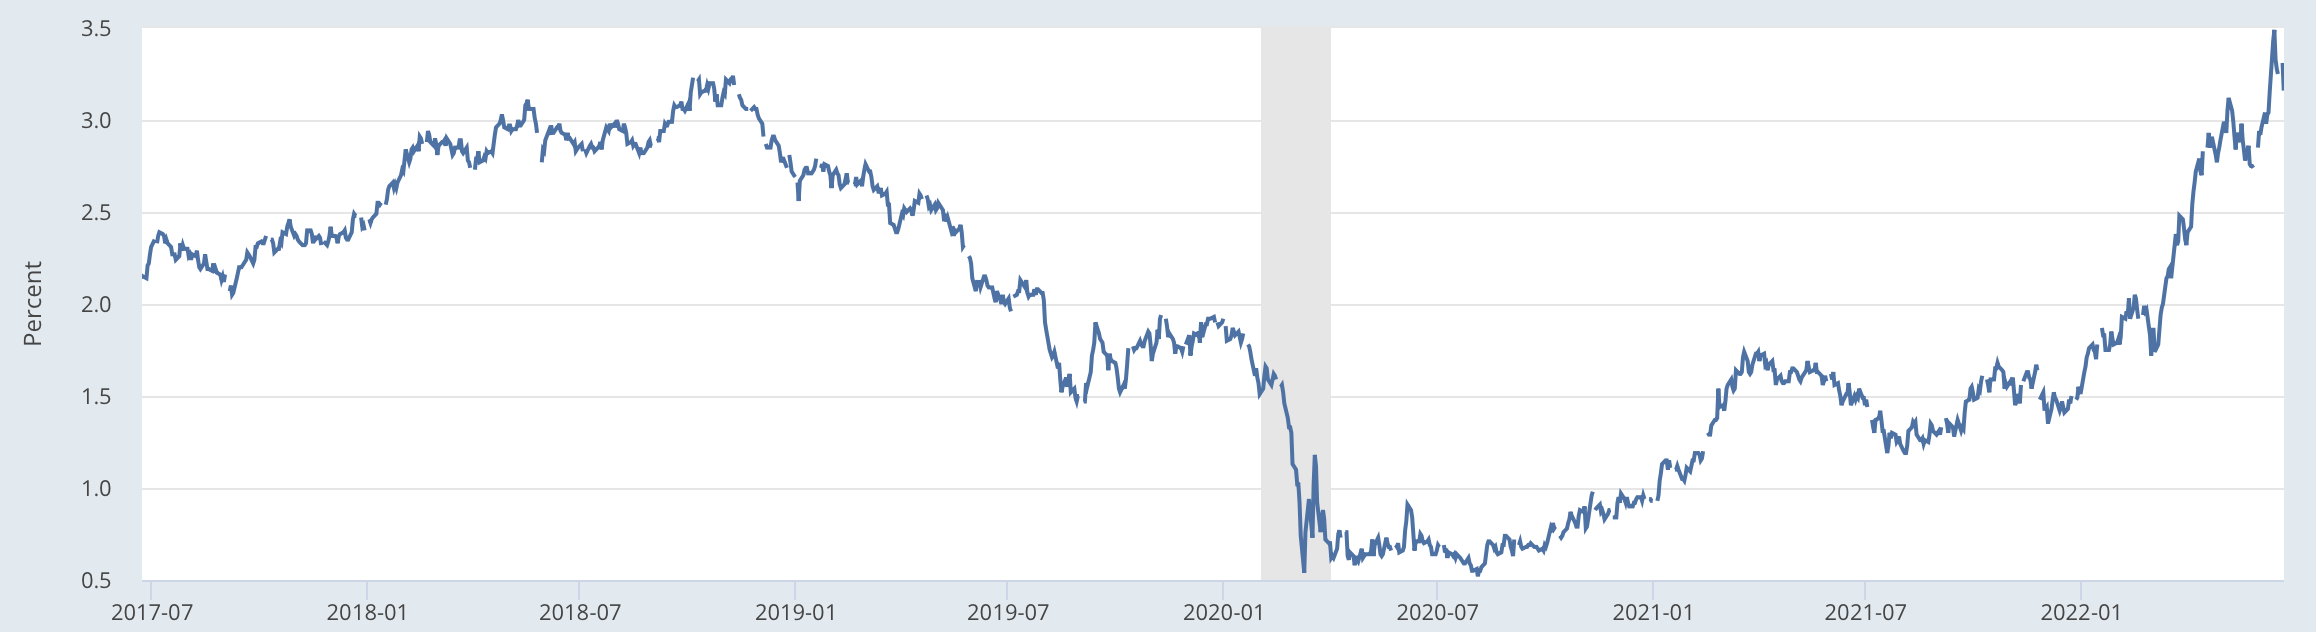 米国の10年債金利の推移